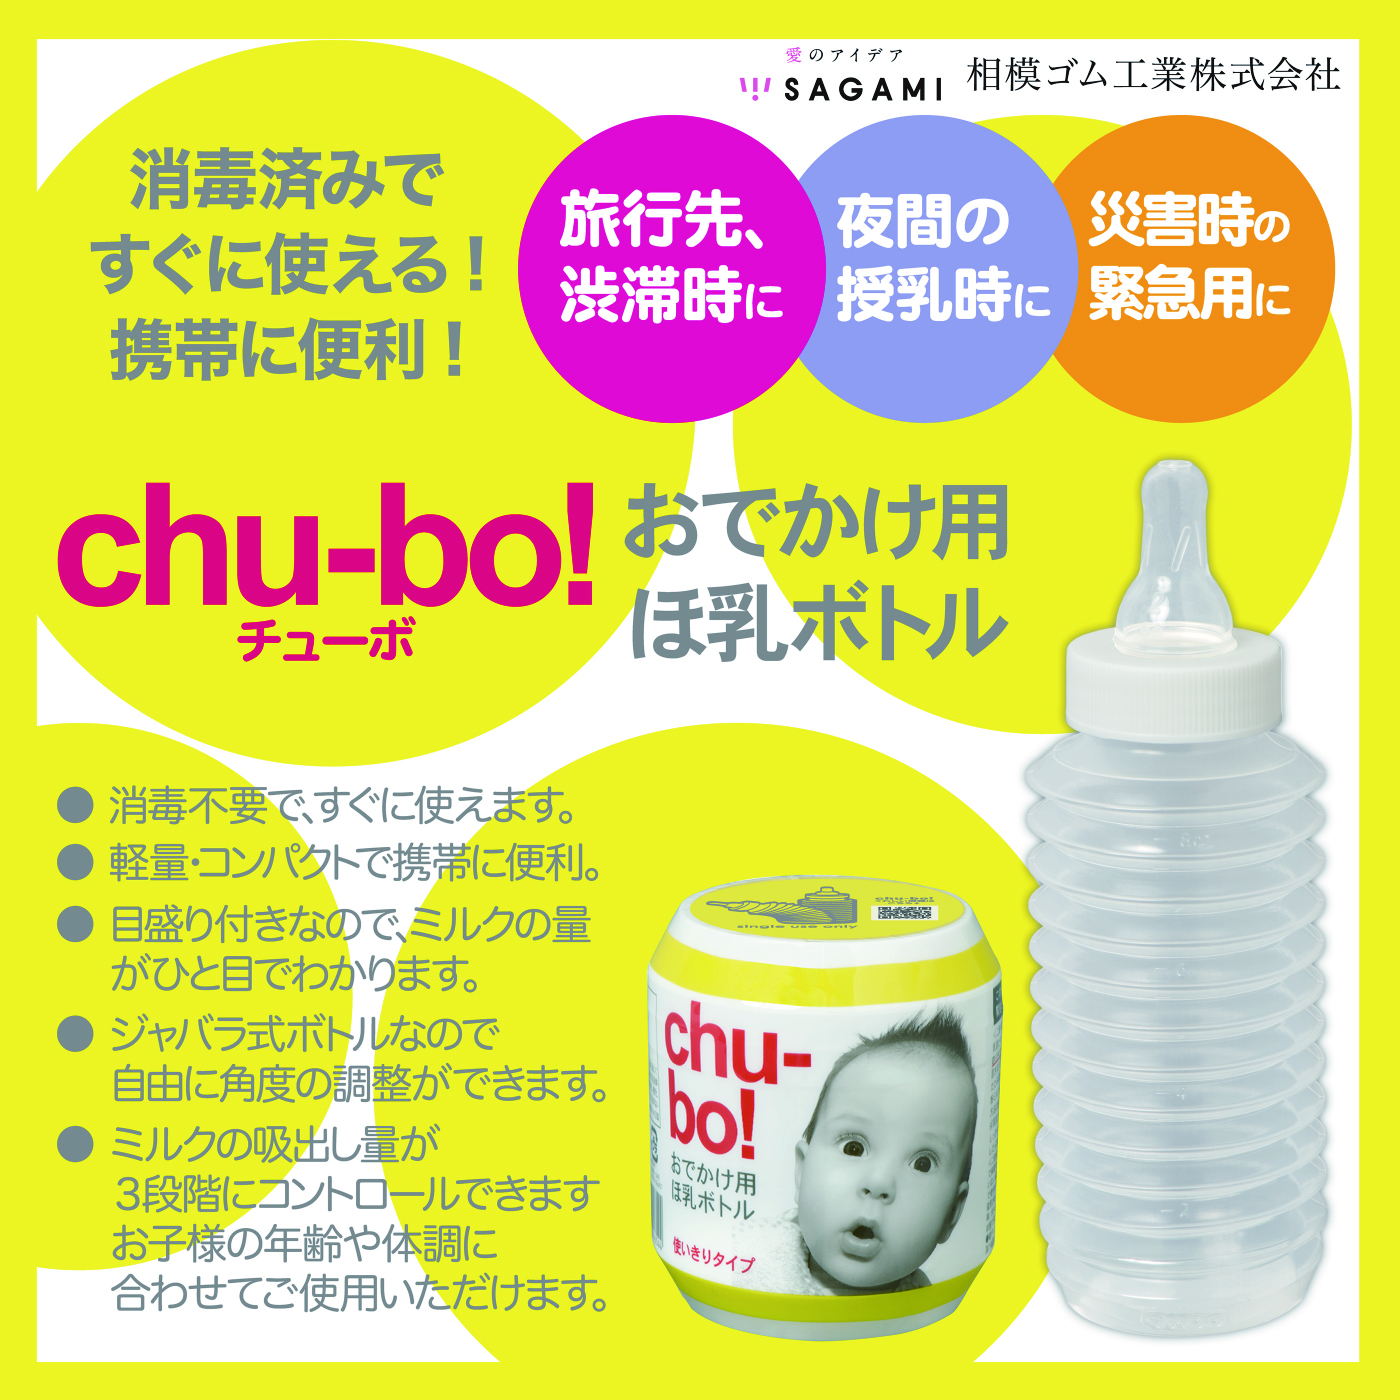 とっておきし新春福袋 chu-bo チューボ 使い捨て哺乳瓶 ７個セット